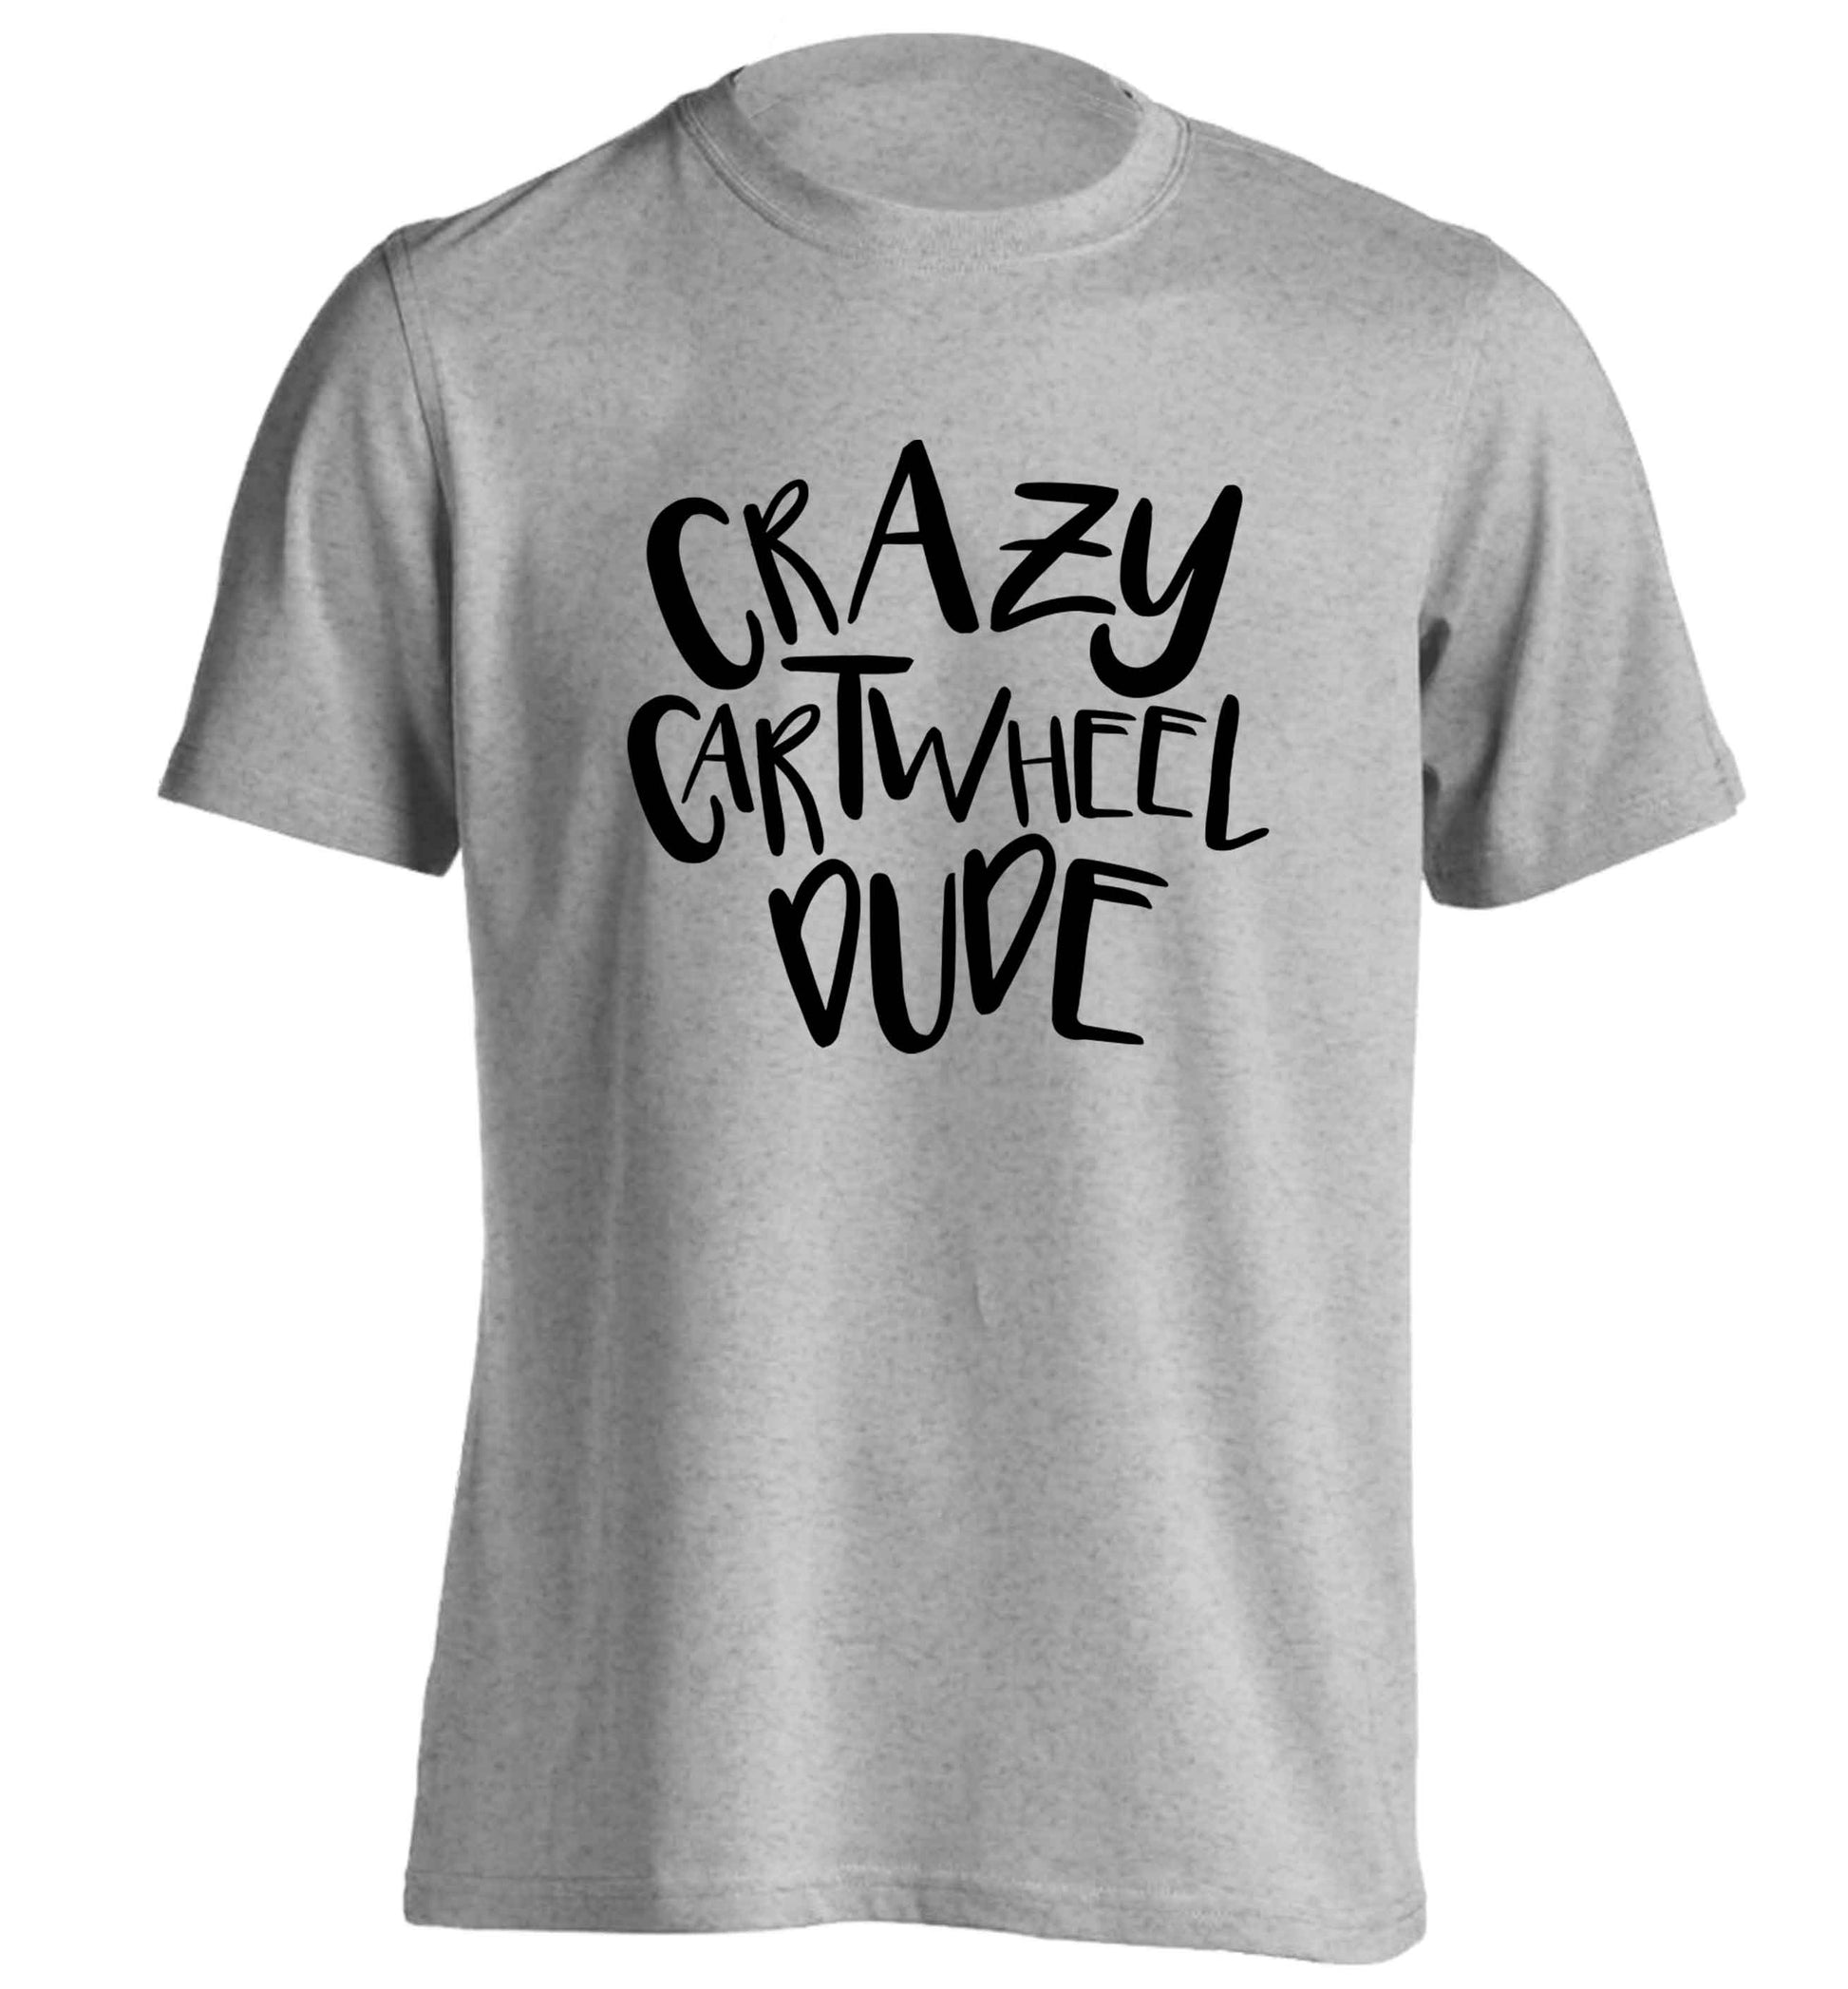 Crazy cartwheel dude adults unisex grey Tshirt 2XL